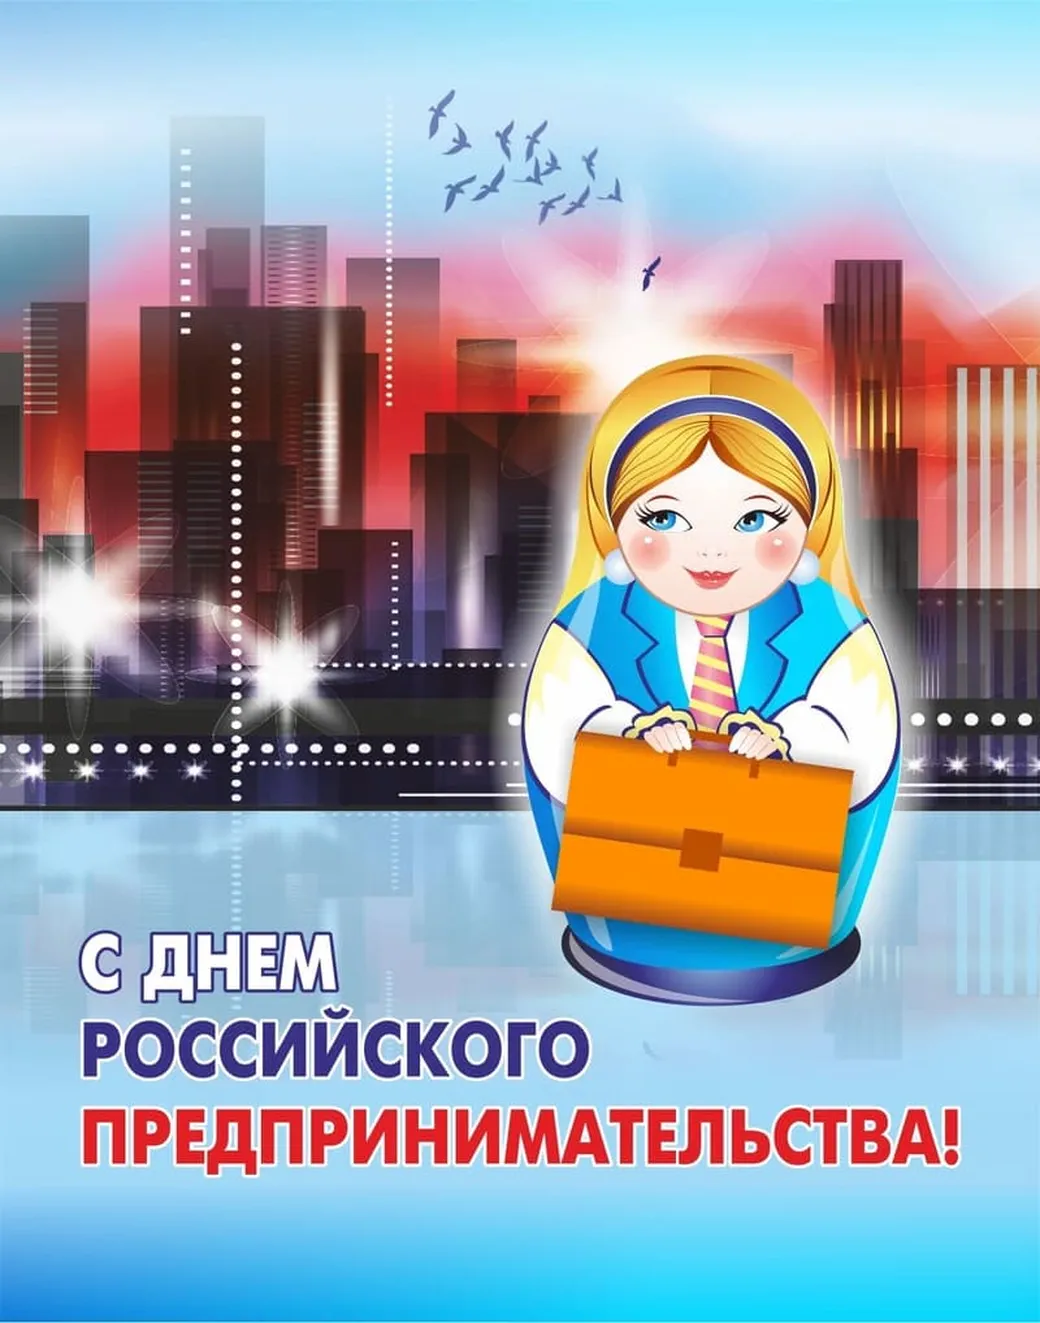 Яркая открытка с днем Российского предпринимательства